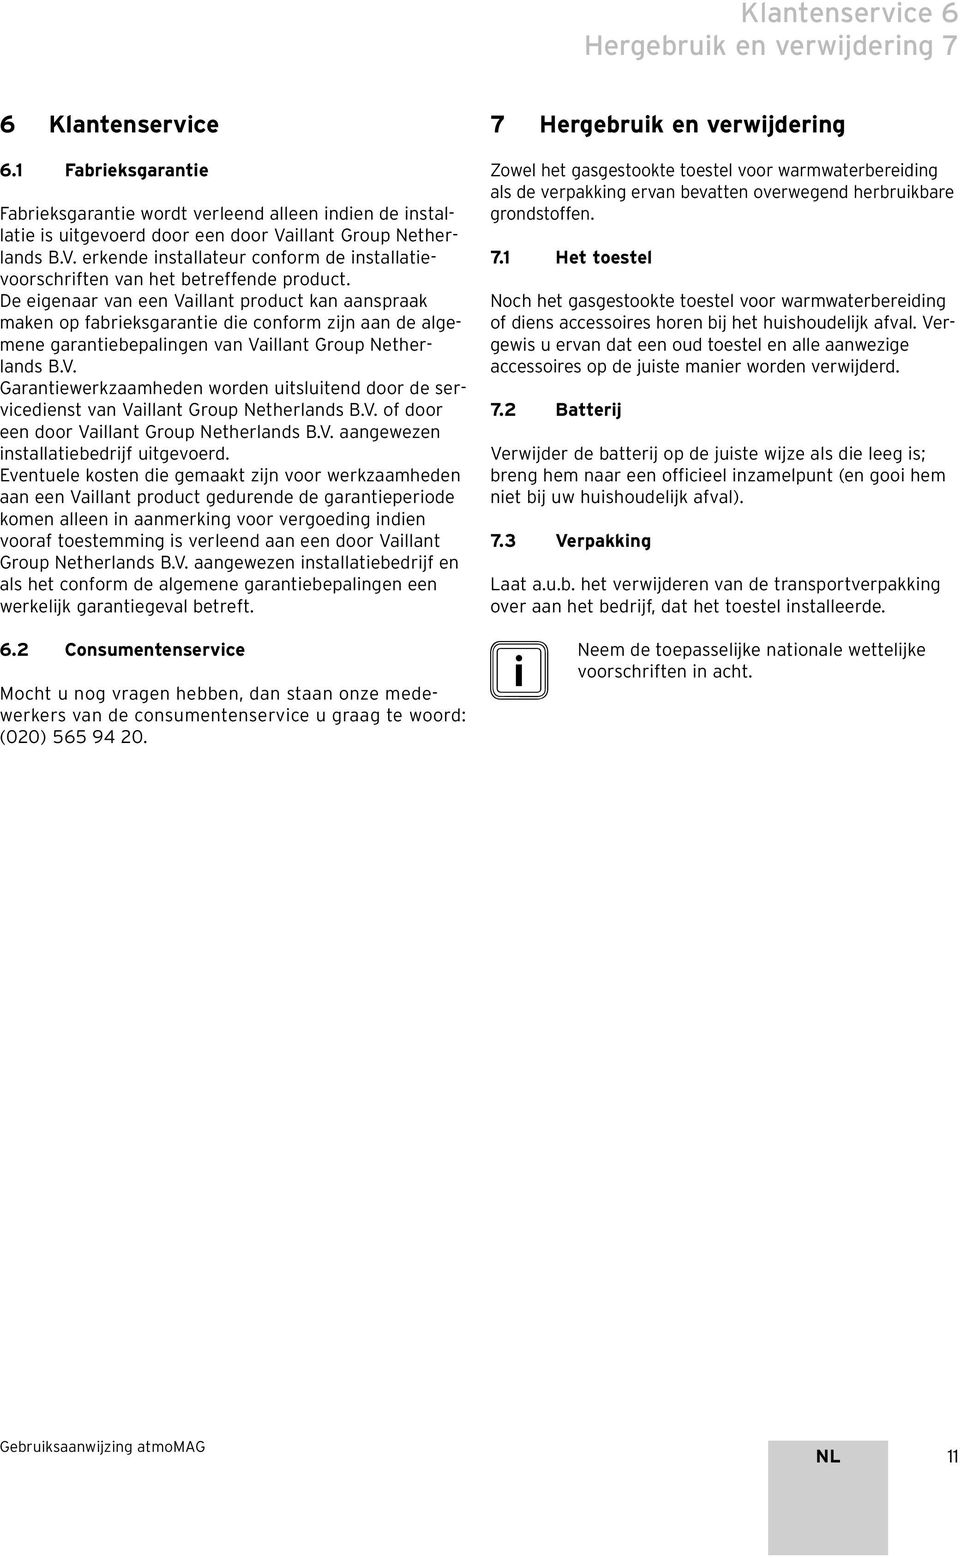 De eigenaar van een Vaillant product kan aanspraak maken op fabrieksgarantie die conform zijn aan de algemene garantiebepalingen van Vaillant Group Netherlands B.V. Garantiewerkzaamheden worden uitsluitend door de servicedienst van Vaillant Group Netherlands B.